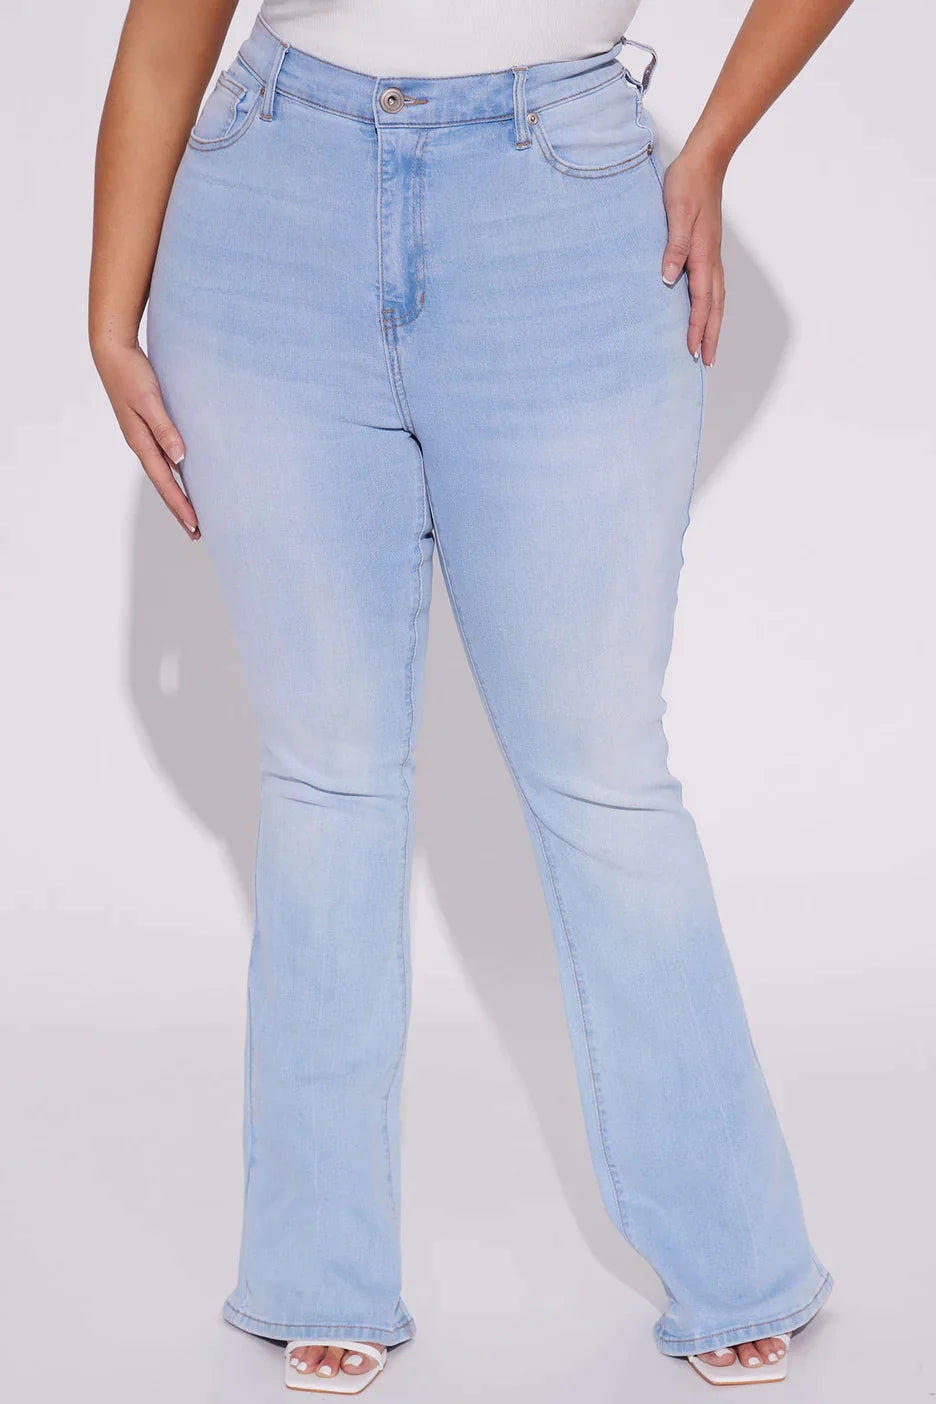 ShapeFit™ Lift Jeans – ShapeLift Jeans